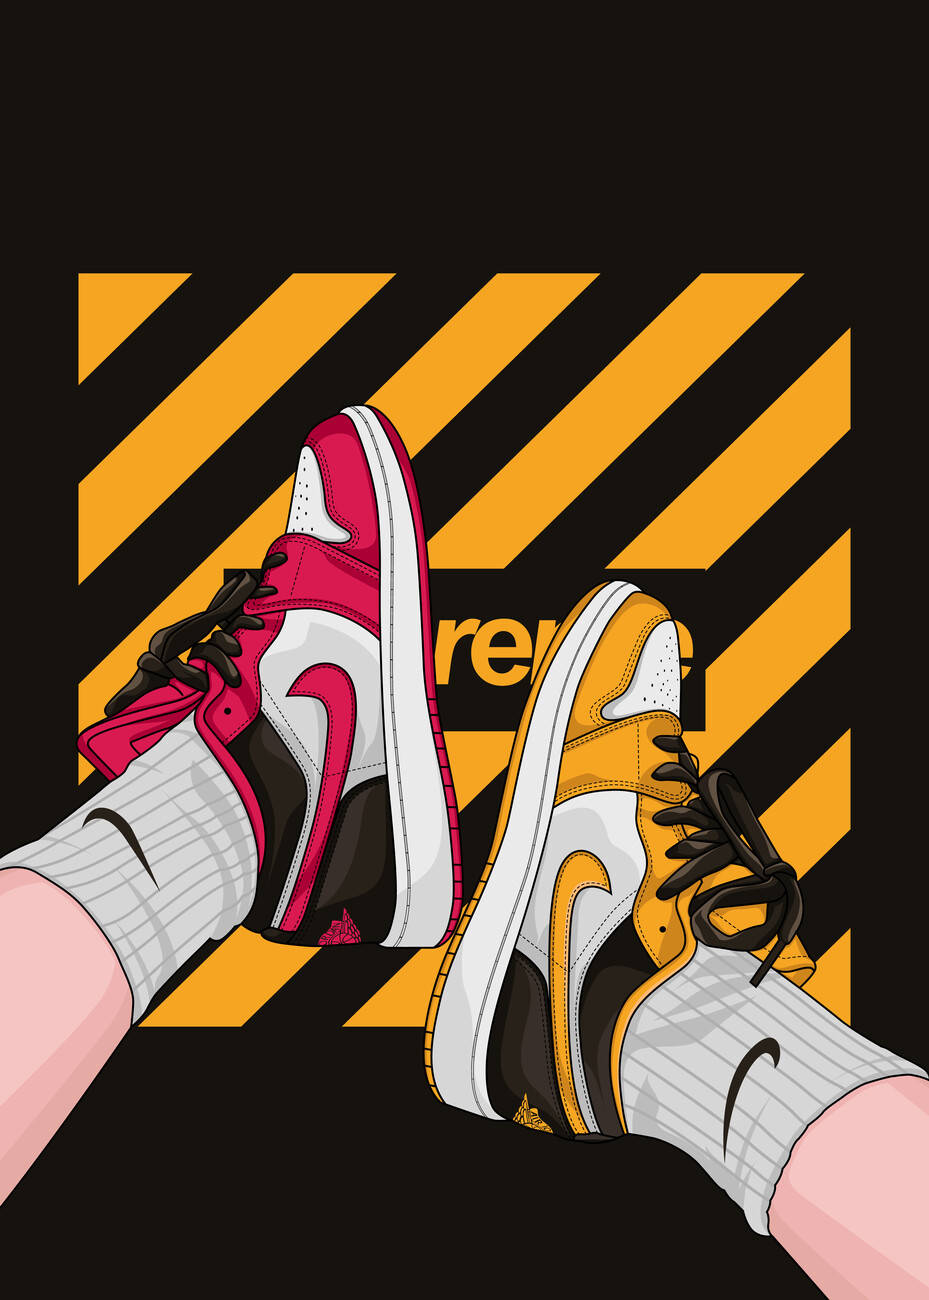 Einpaar Sneakers Auf Einem Gelben Und Schwarzen Hintergrund Wallpaper